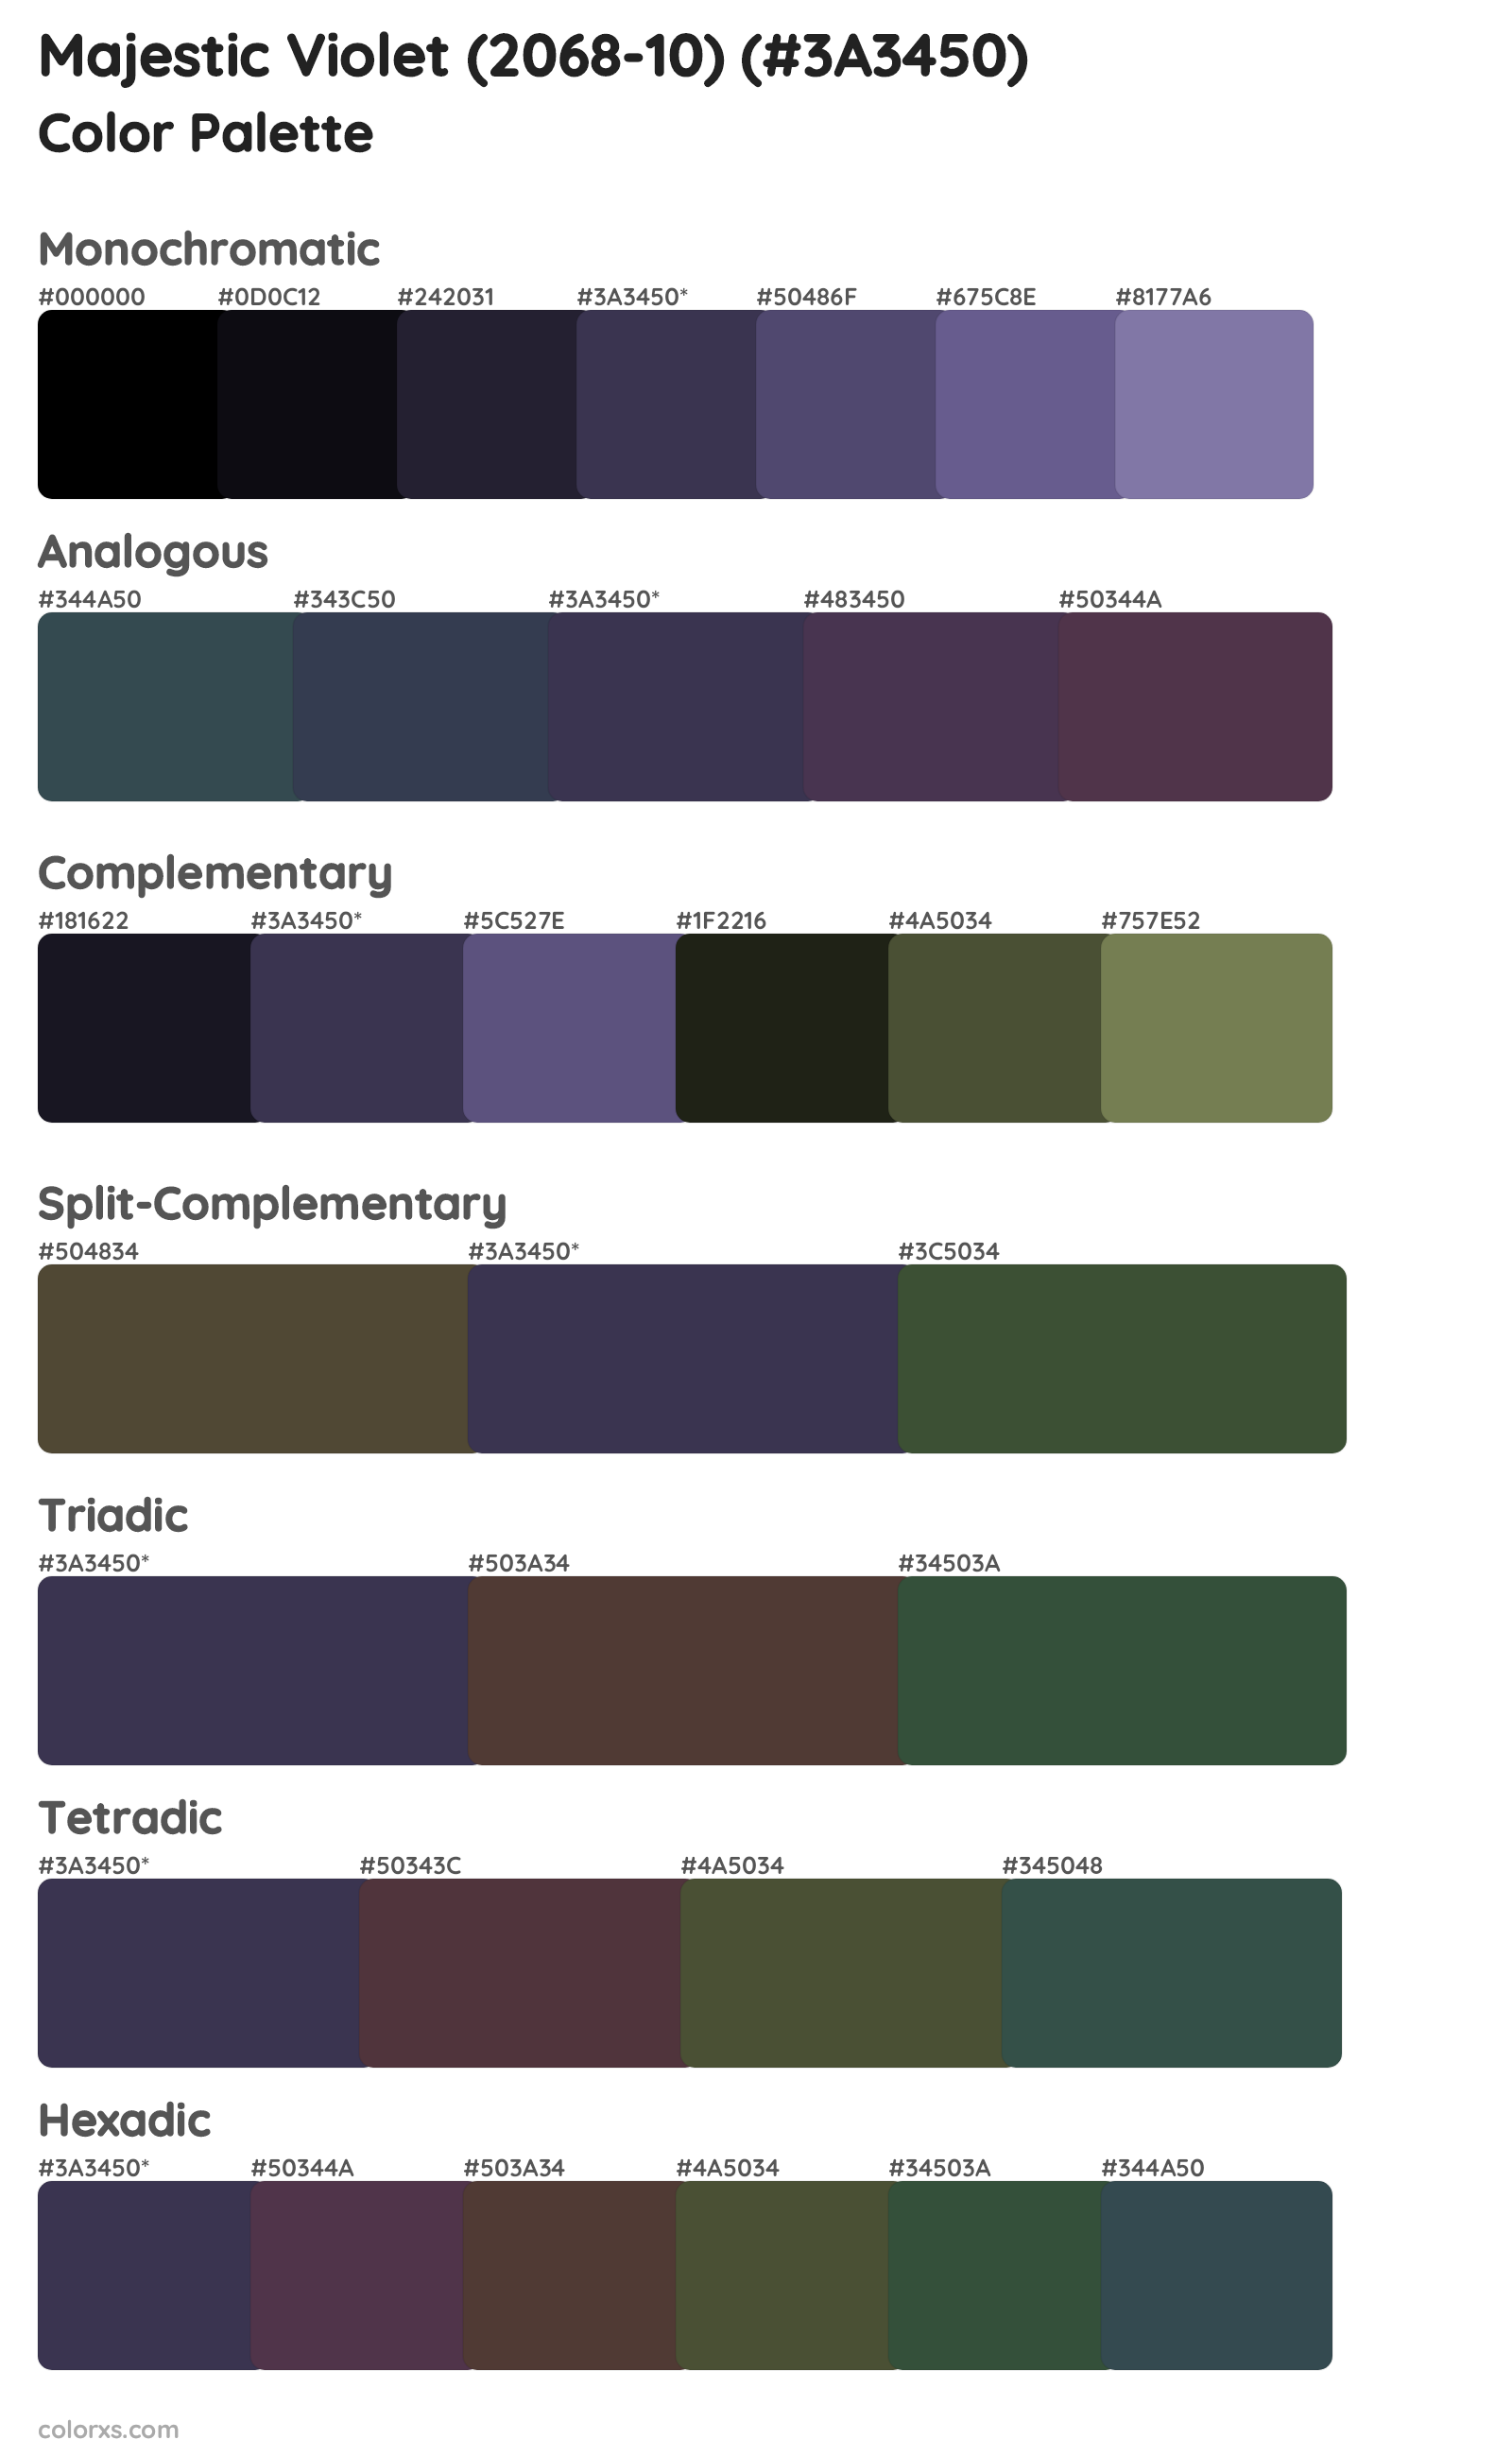 Majestic Violet (2068-10) Color Scheme Palettes